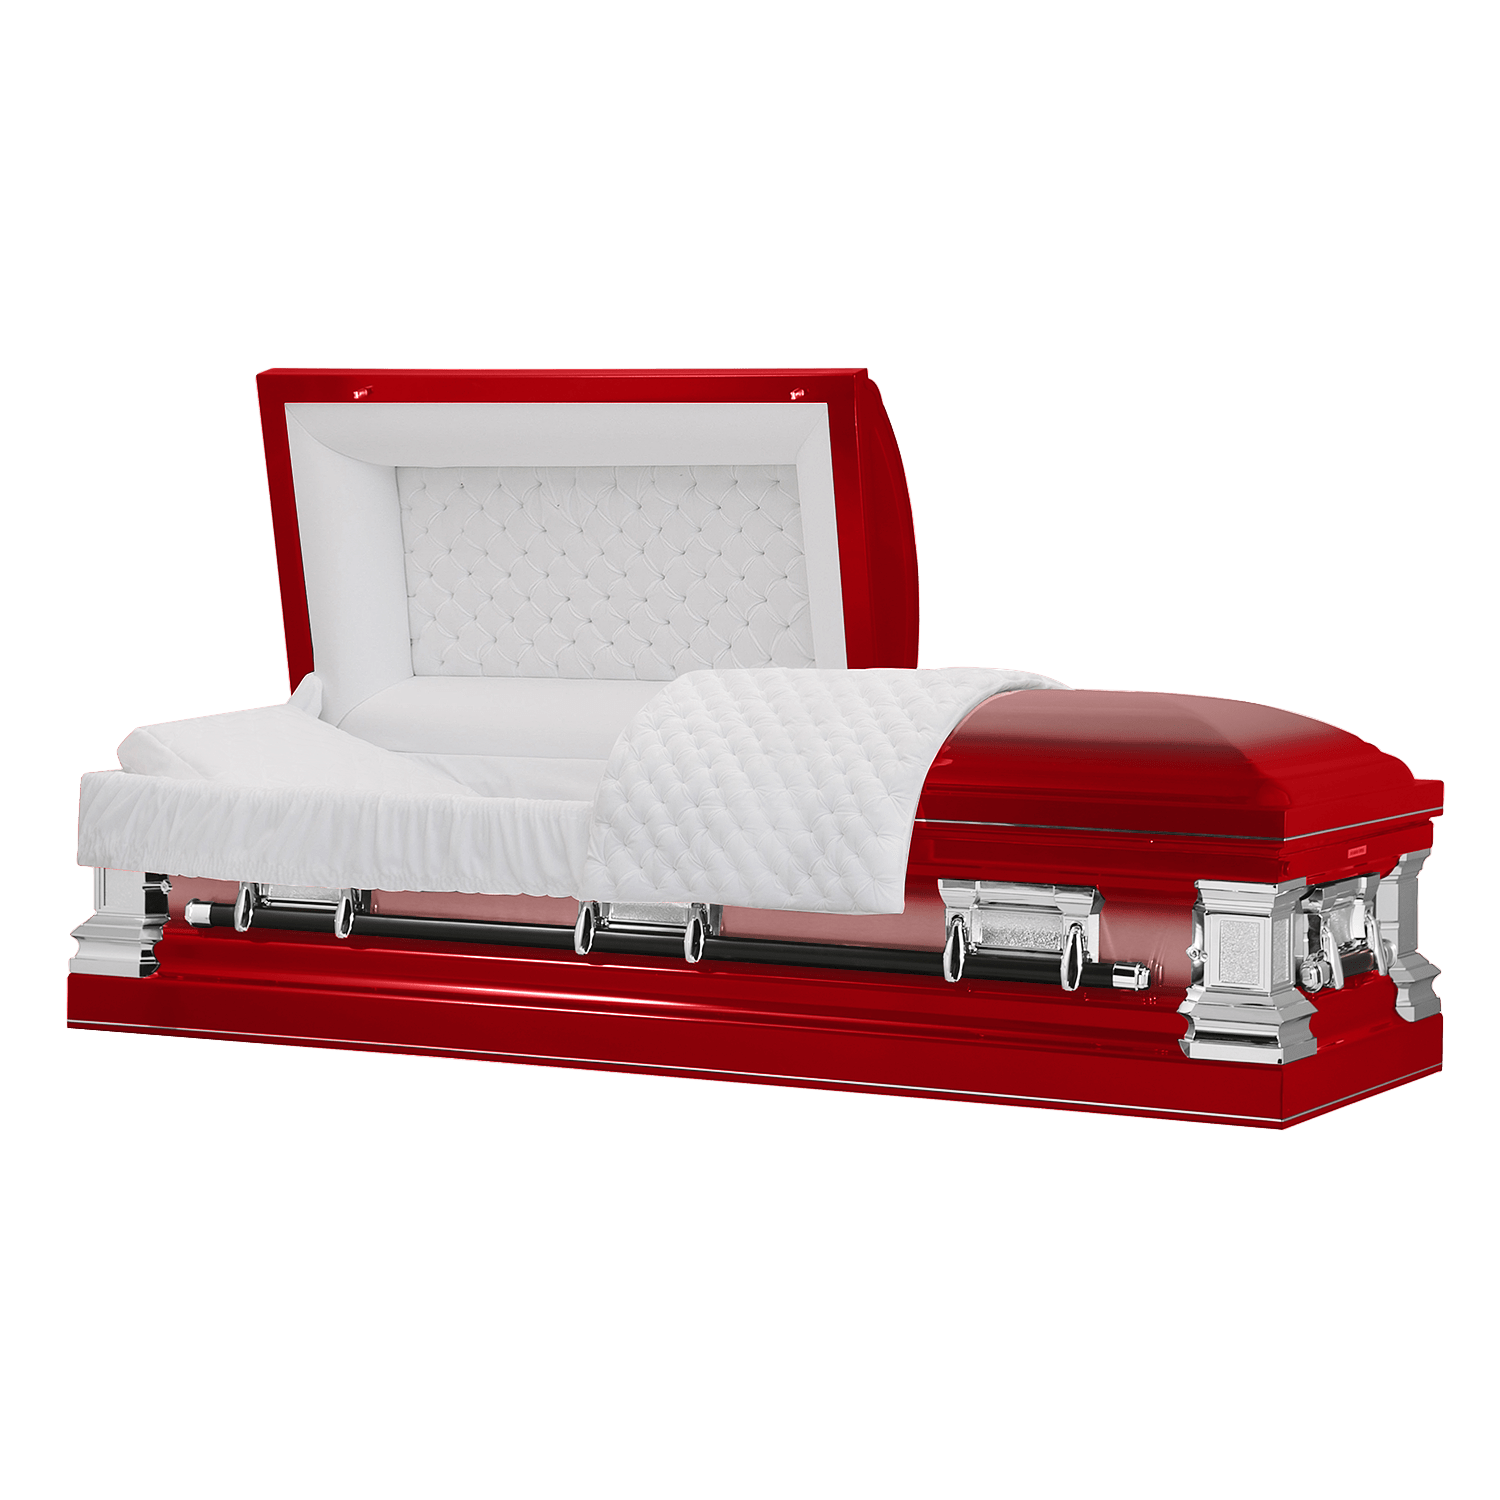 Era Series | Red Stainless Steel Casket with White Interior - Titan Casket